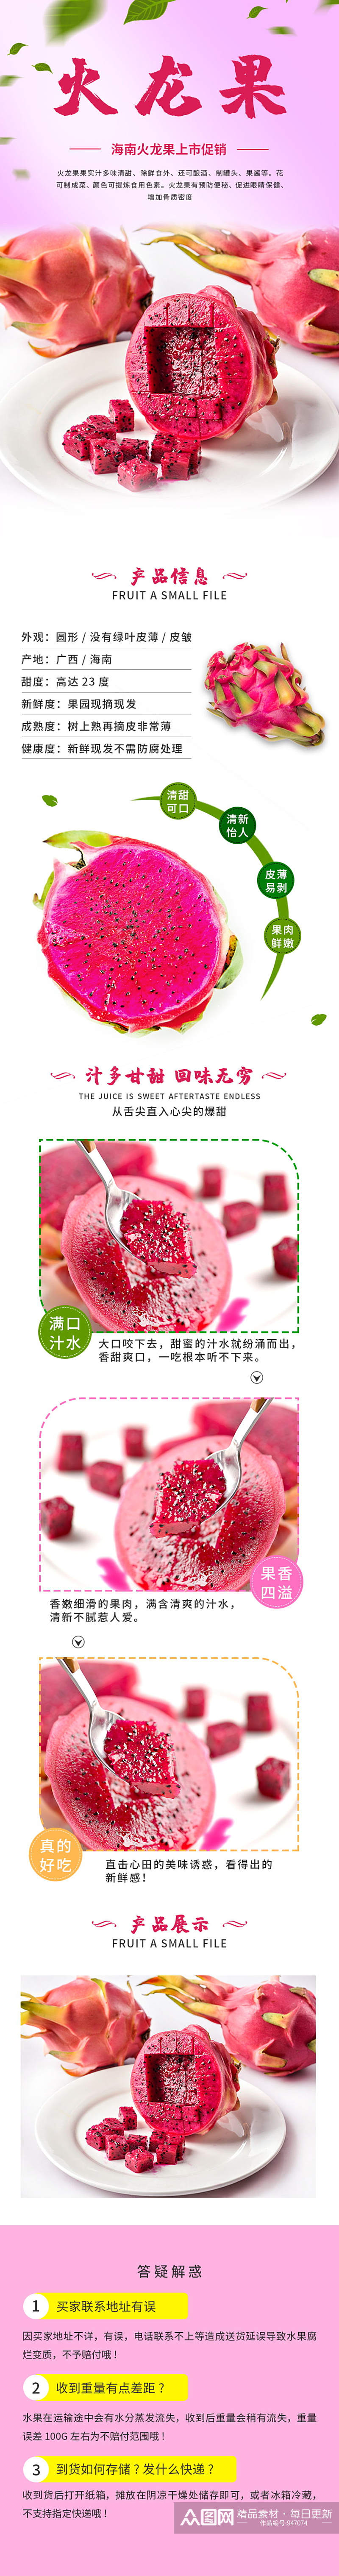 粉色生鲜水果红心火龙果详情页素材